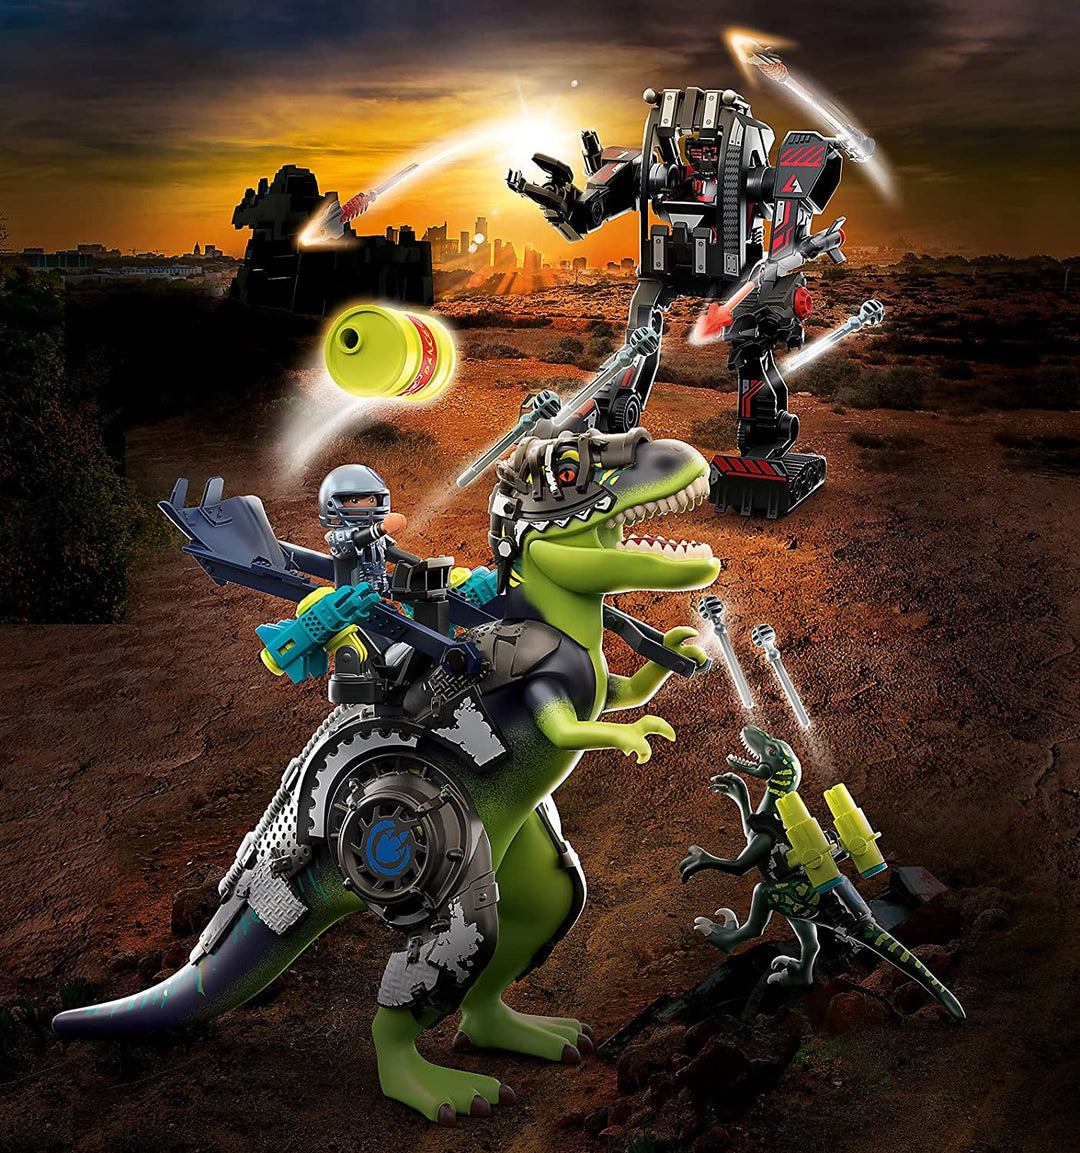 Playmobil T-rex: batalla de los gigantes 70624 -